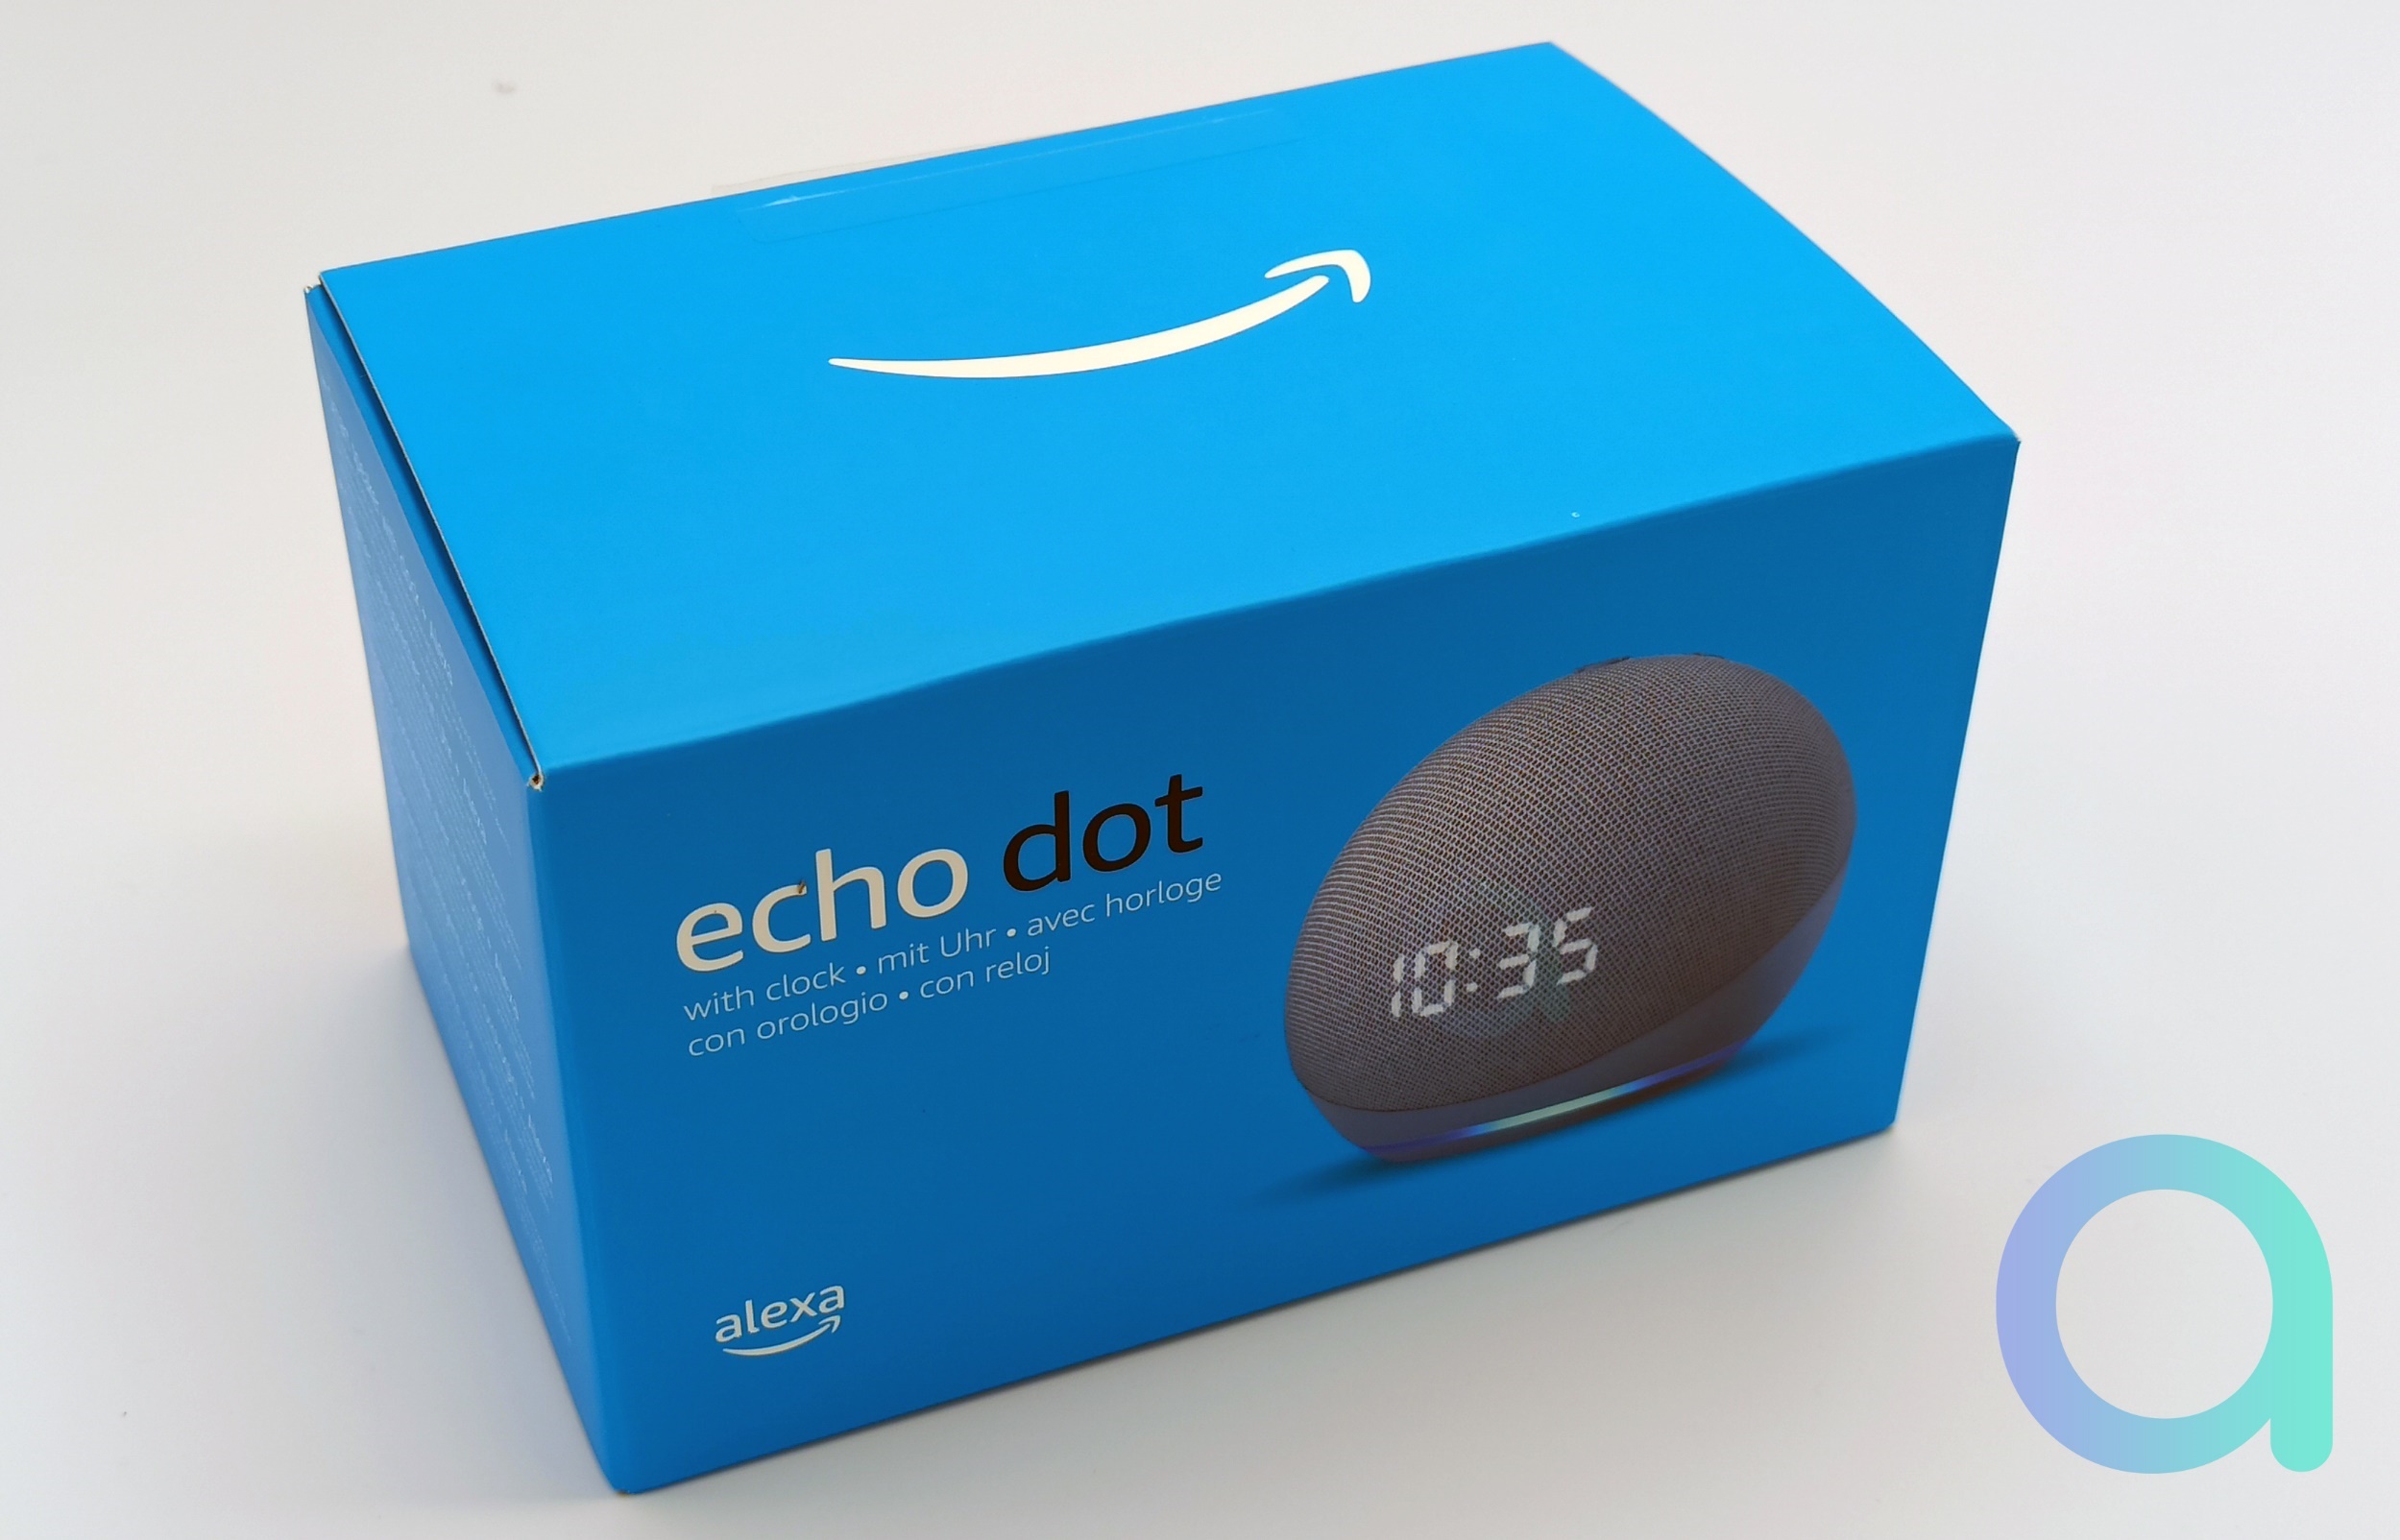 Essais de l'Echo Dot d' avec Alexa et horloge - Blogue Best Buy